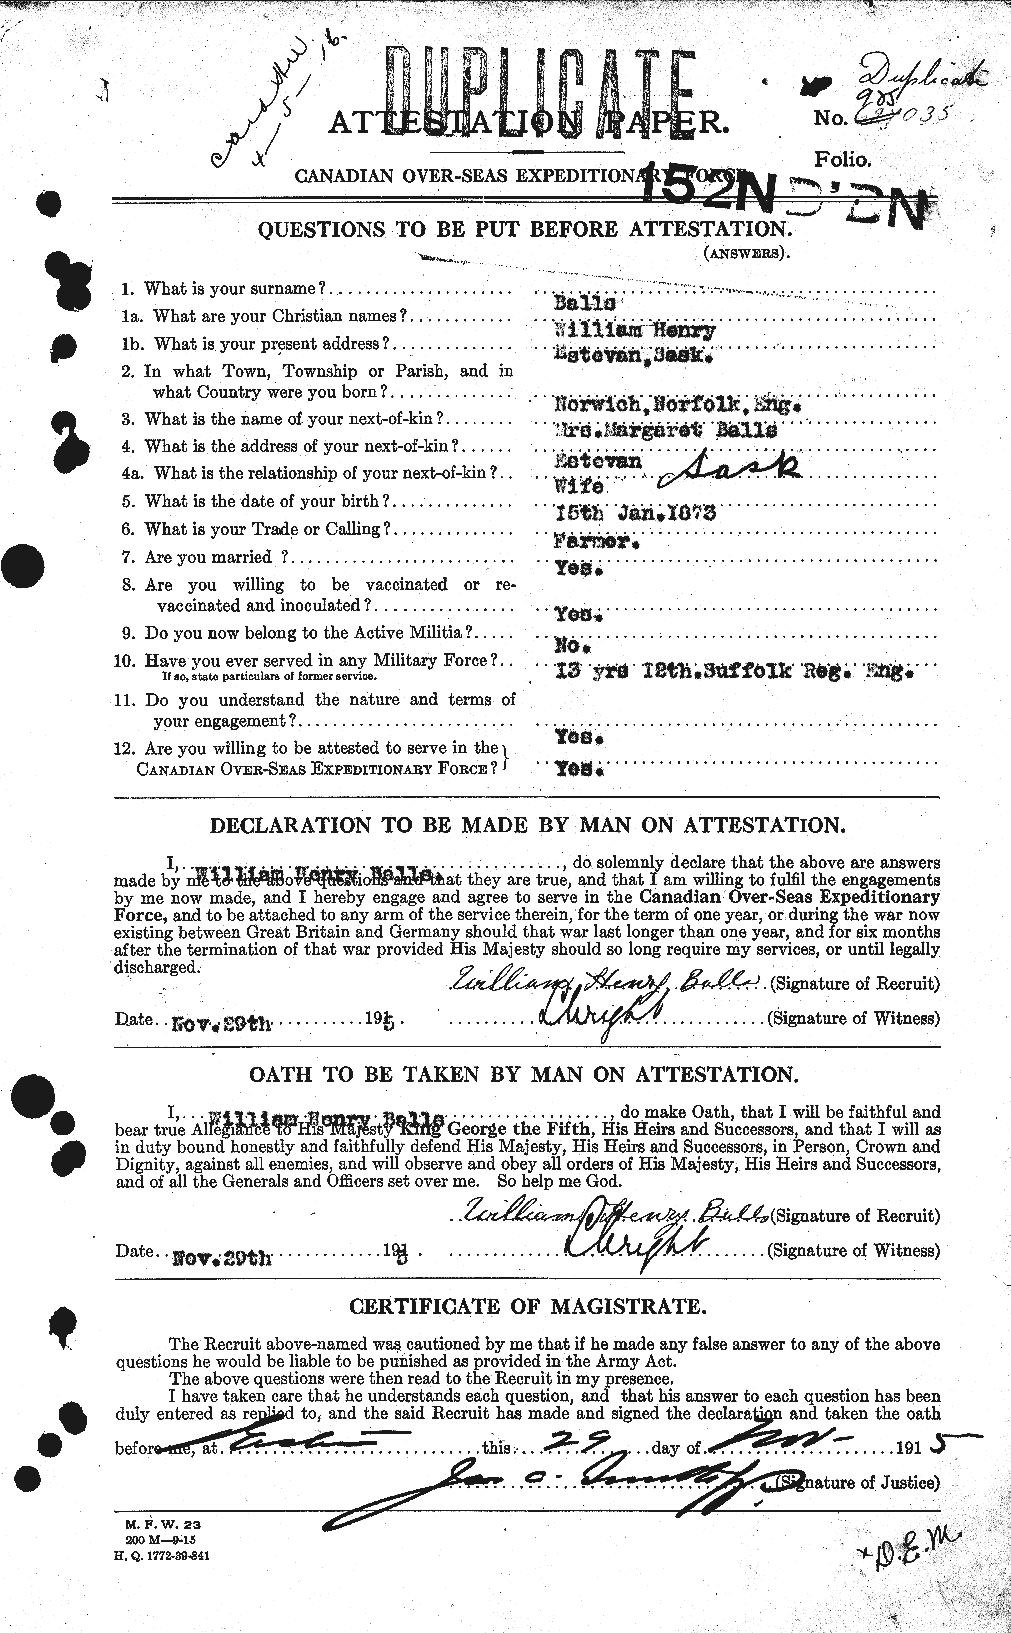 Dossiers du Personnel de la Première Guerre mondiale - CEC 219610a